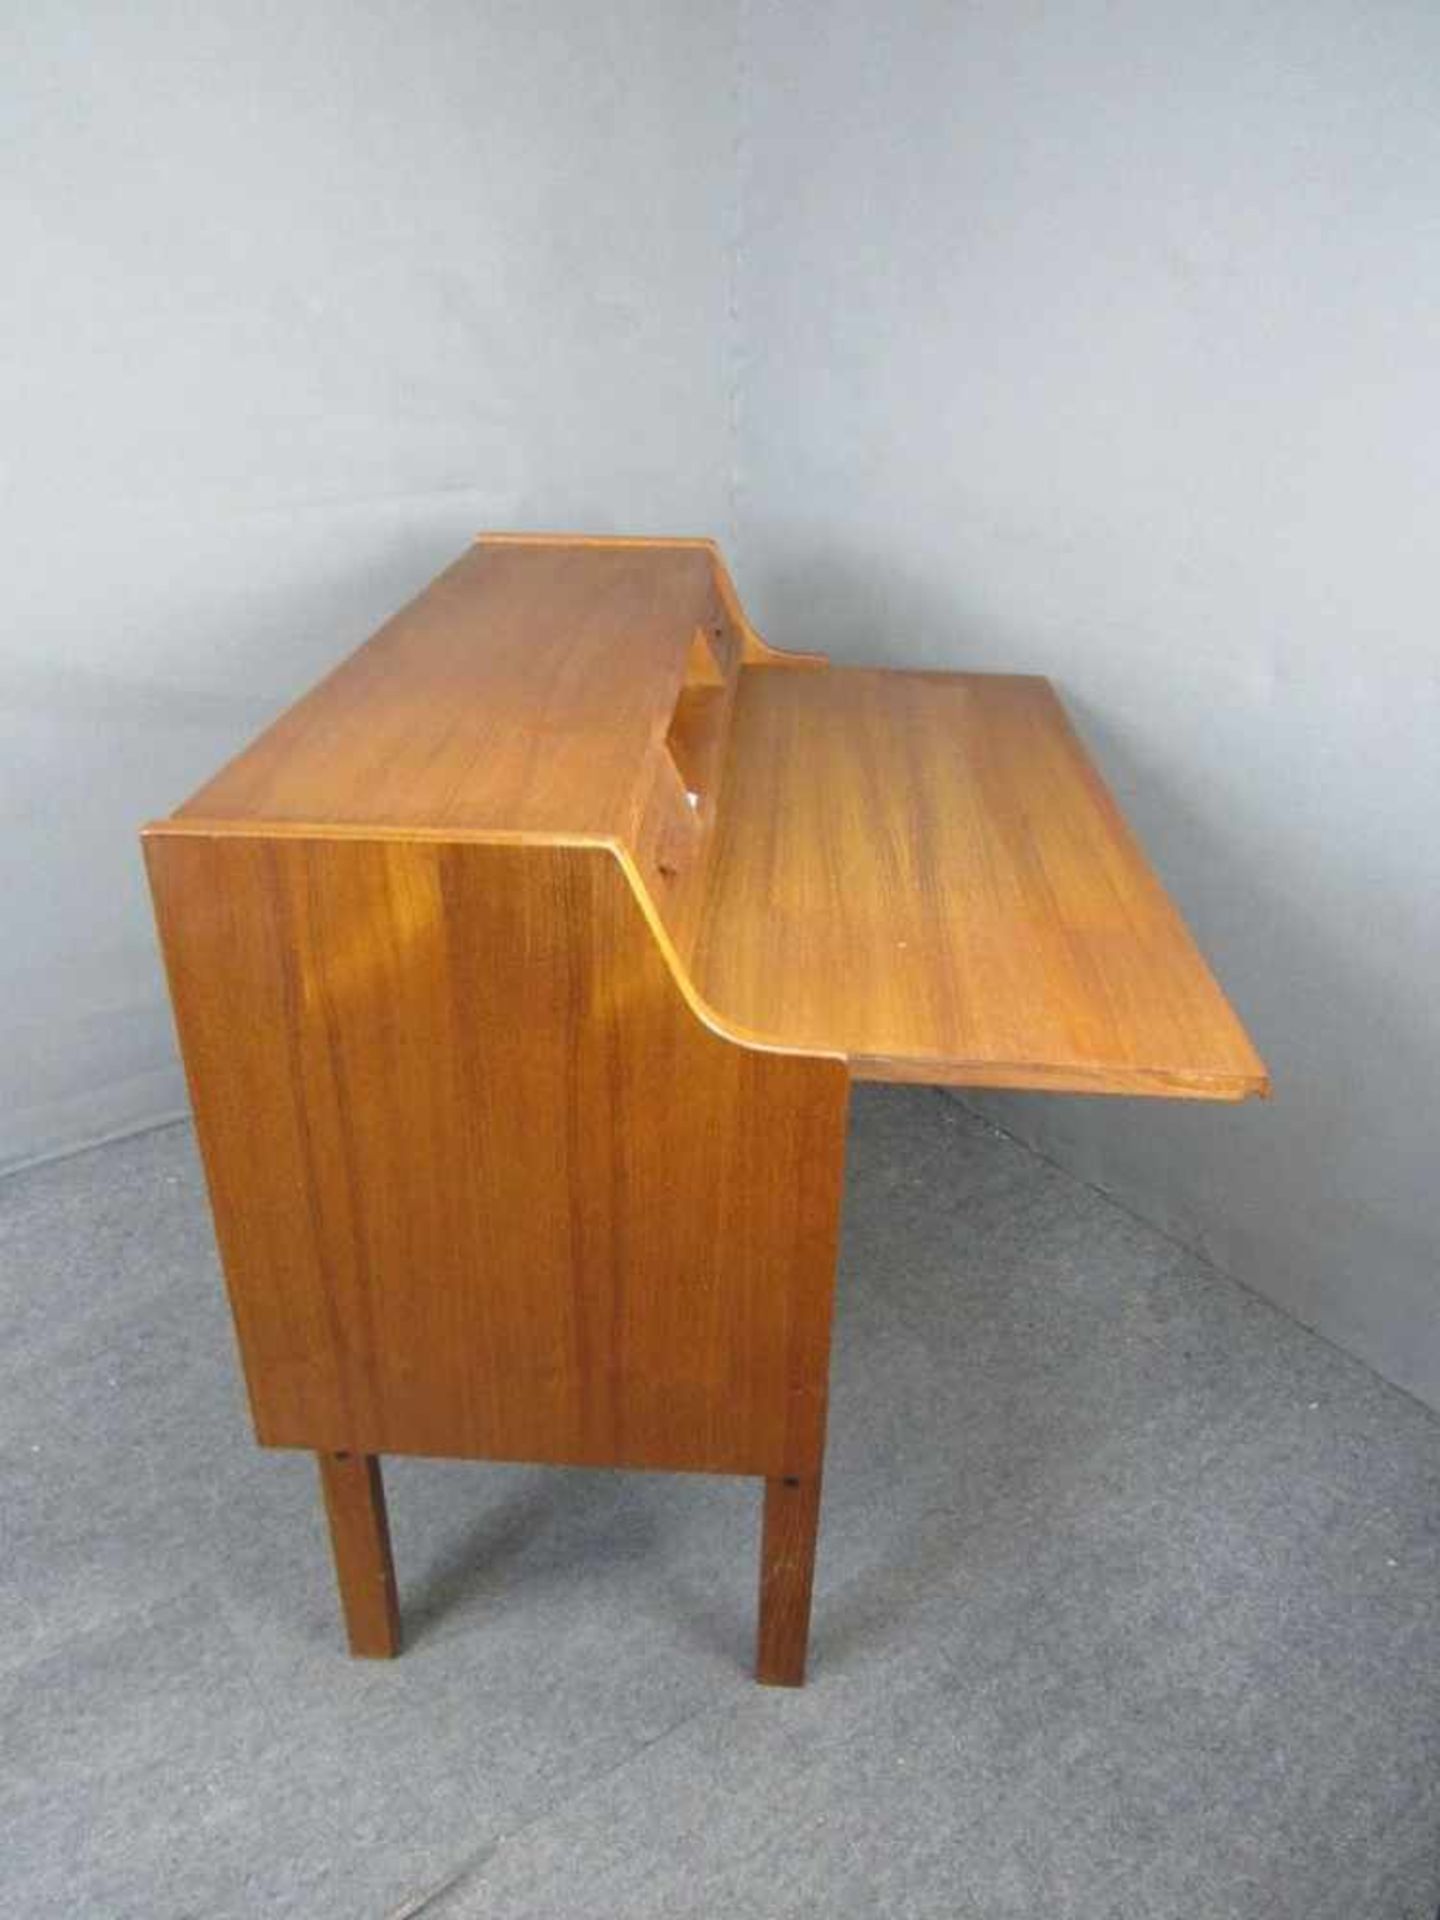 Dänisch Design Schreibtisch 60er Jahre ausziehbare Arbeitsplatte gemarkt WM Made in Denmark - Image 7 of 8